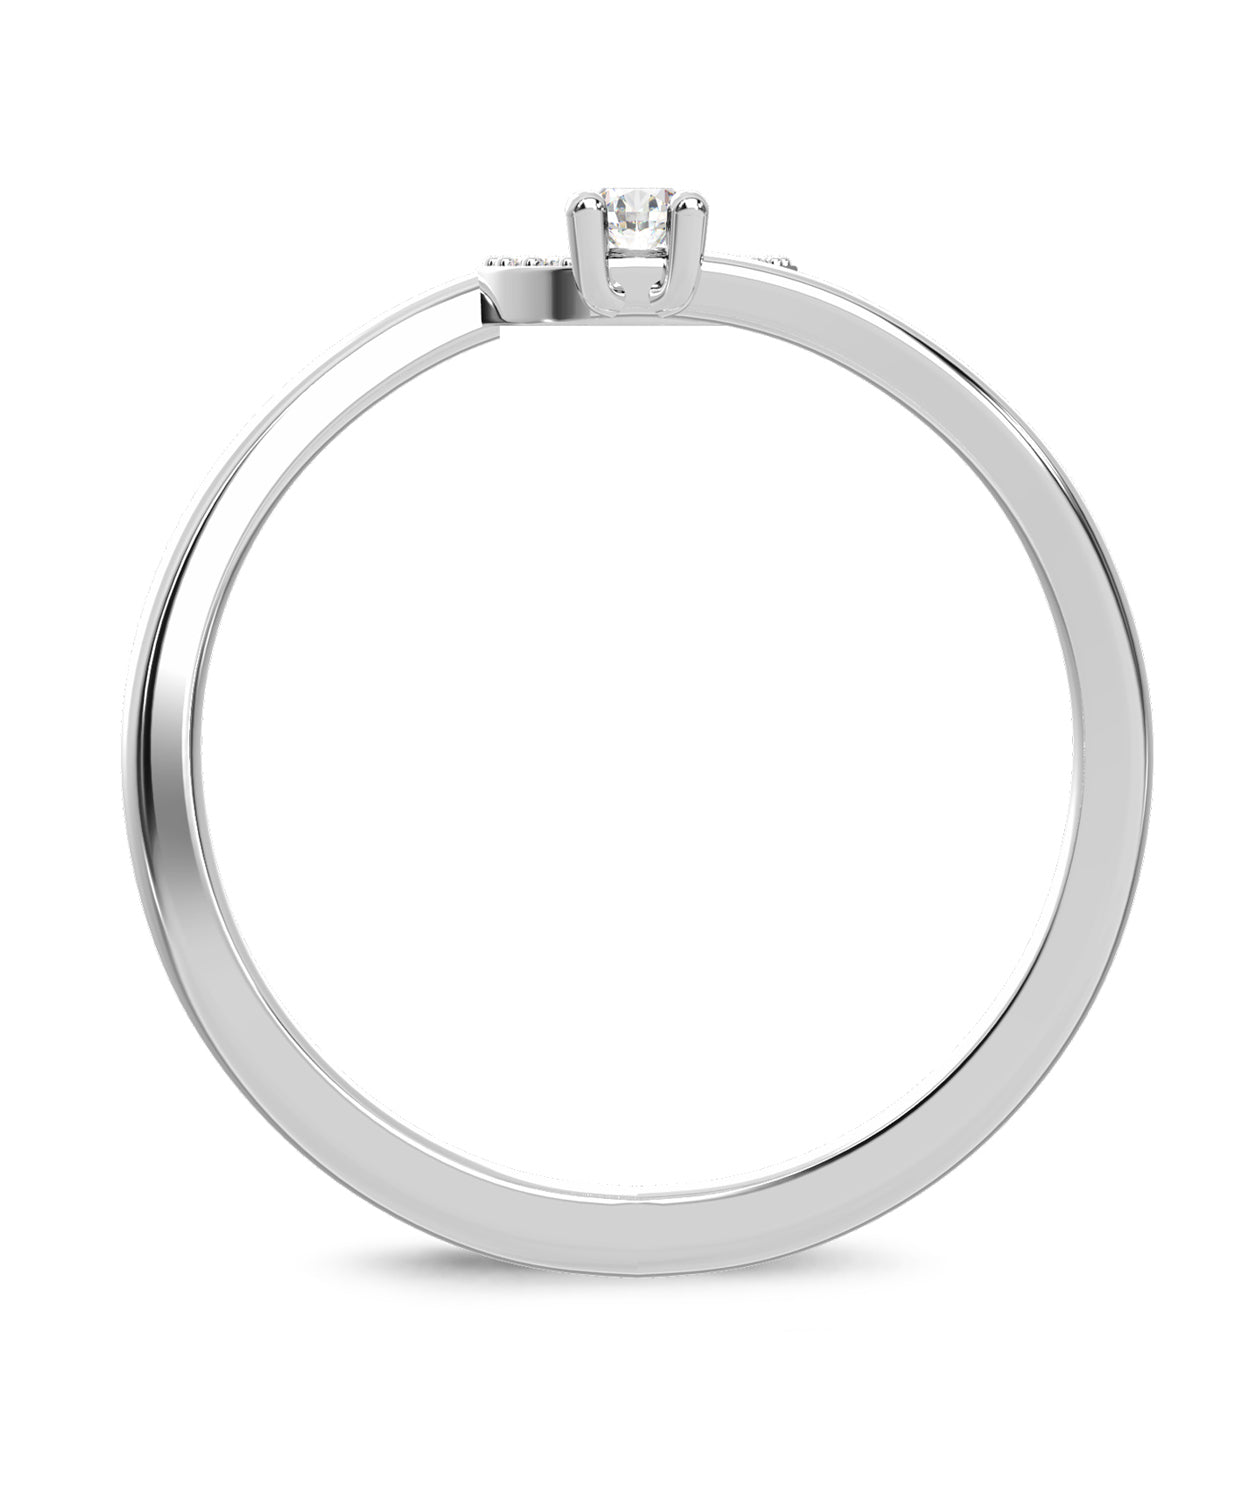 ESEMCO Diamond 18k White Gold Letter Q Initial Open Ring View 2